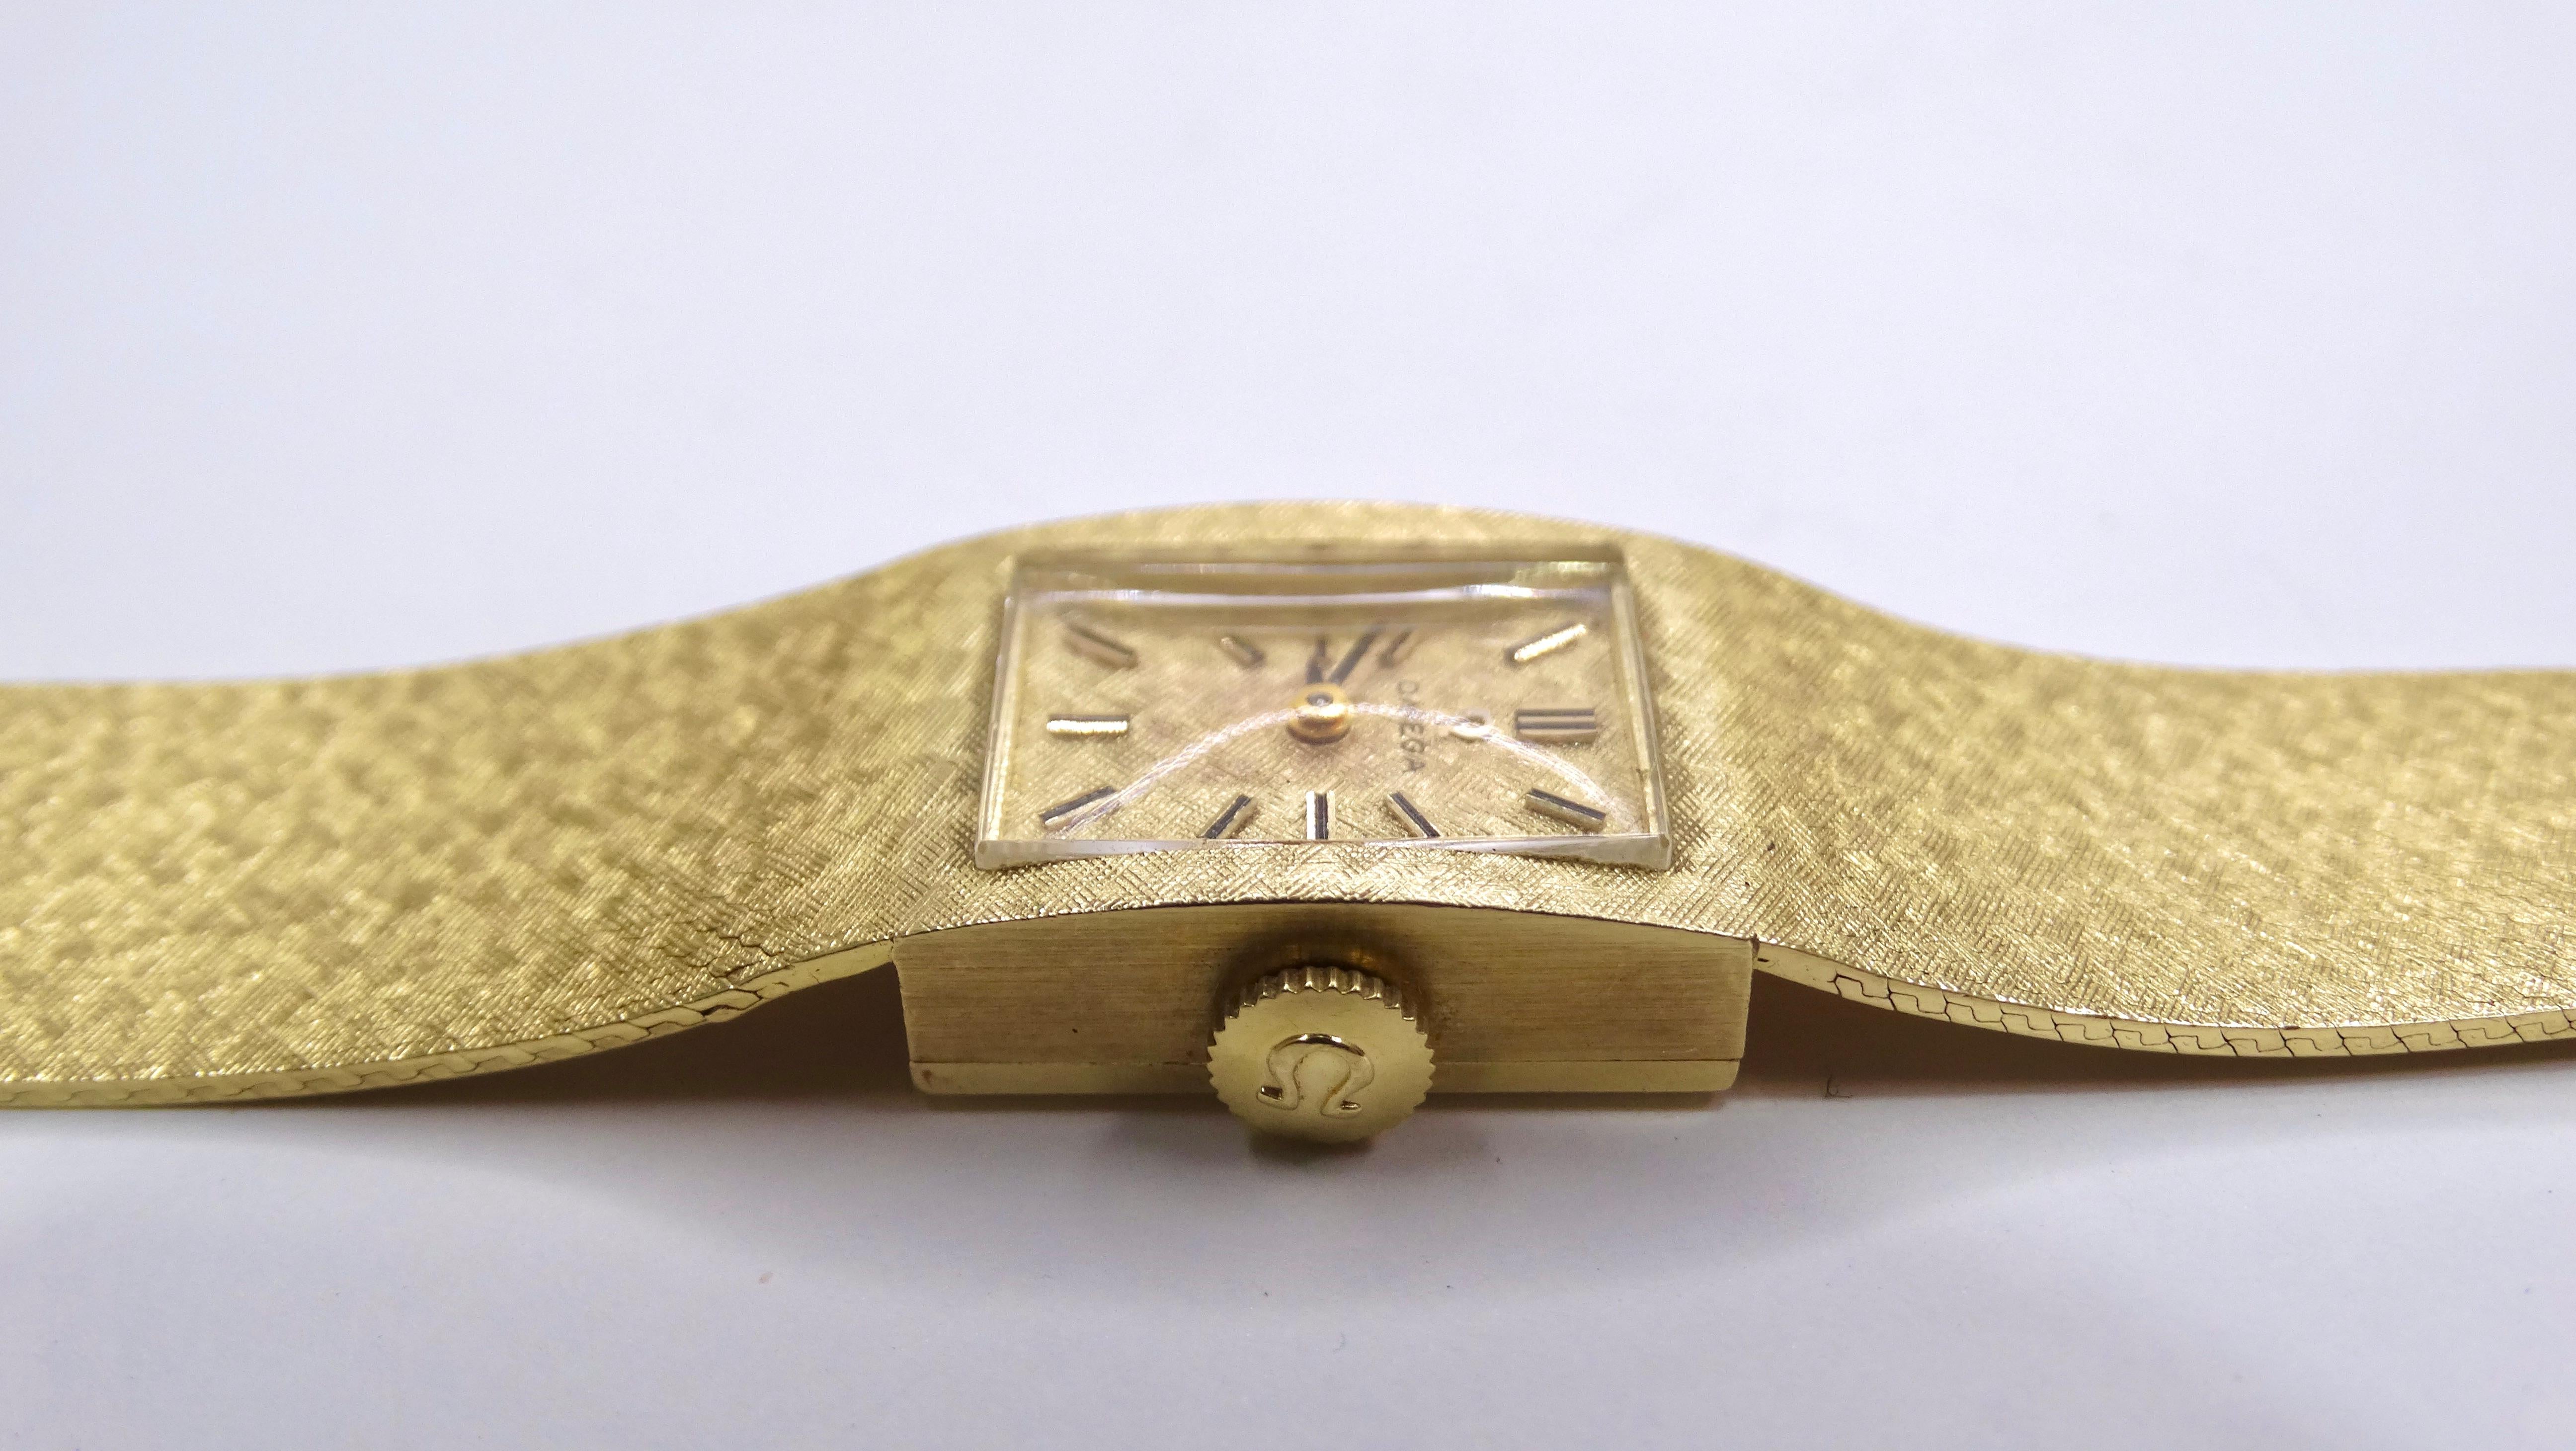 Ajoutez une montre Omega élégante et cool à votre collection. Il s'agit d'une pièce parfaite à porter au quotidien en raison de son design minimal et de sa composition en or massif 14k. Cette pièce serait parfaite pour être associée à d'autres